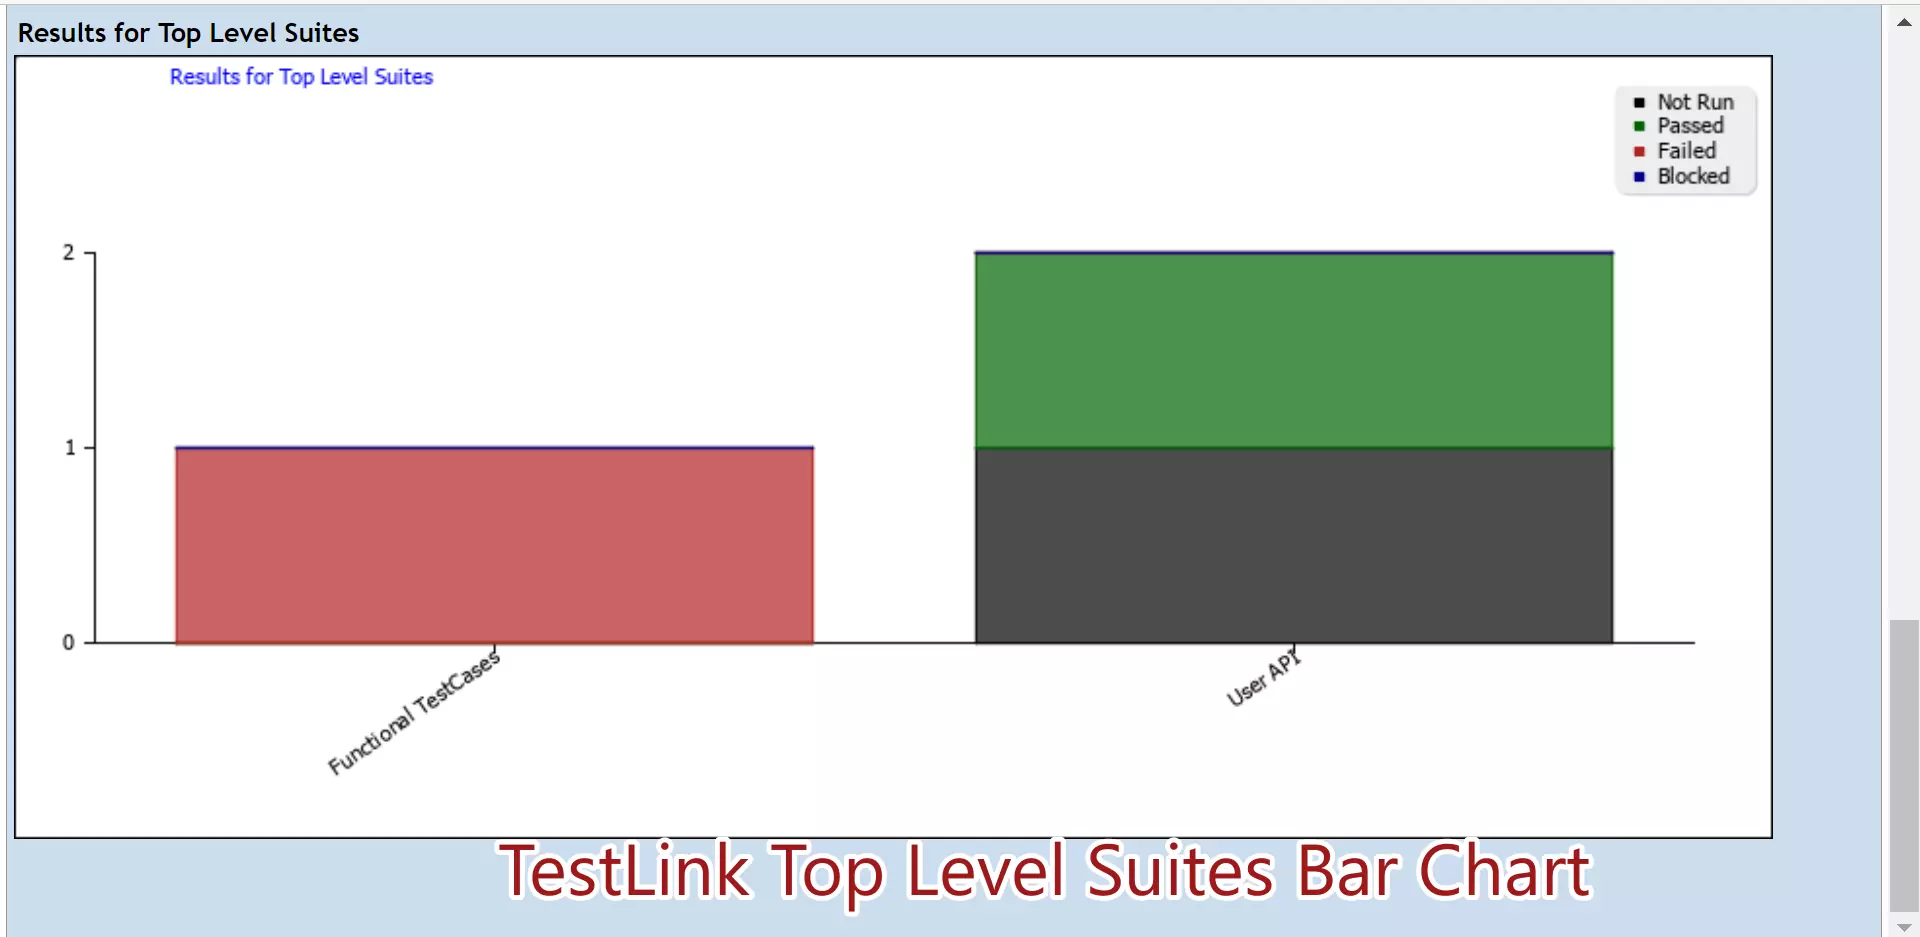 TestLink Top Level Suites Bar Chart